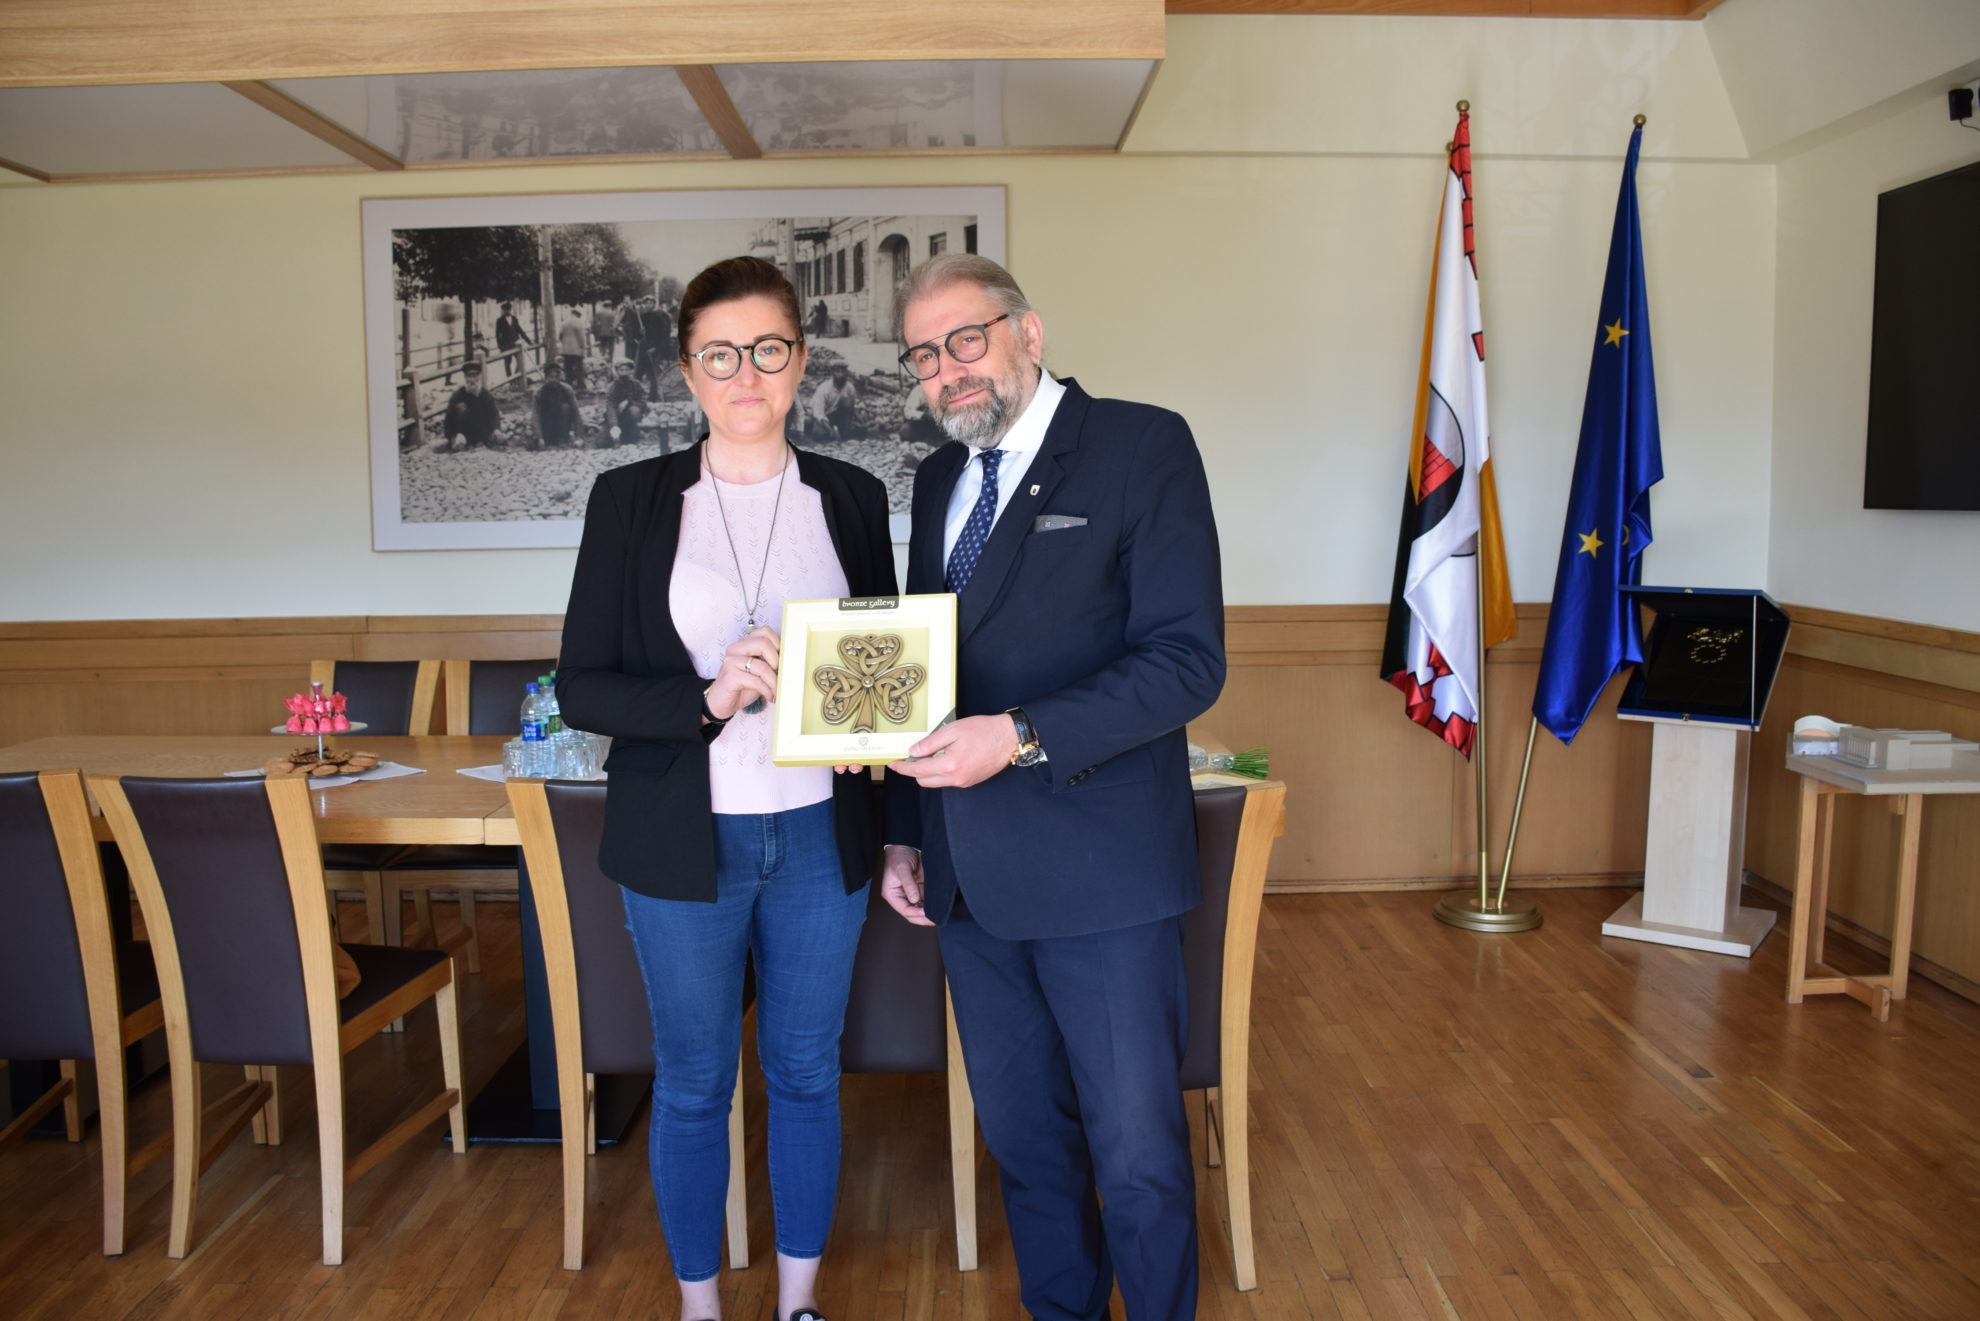 Šiandien Panevėžio miesto meras Rytis Račkauskas įteikė pažymėjimą jau antrajai projekto „Globalus Panevėžys“ ambasadorei Donatai Simonaitienei.